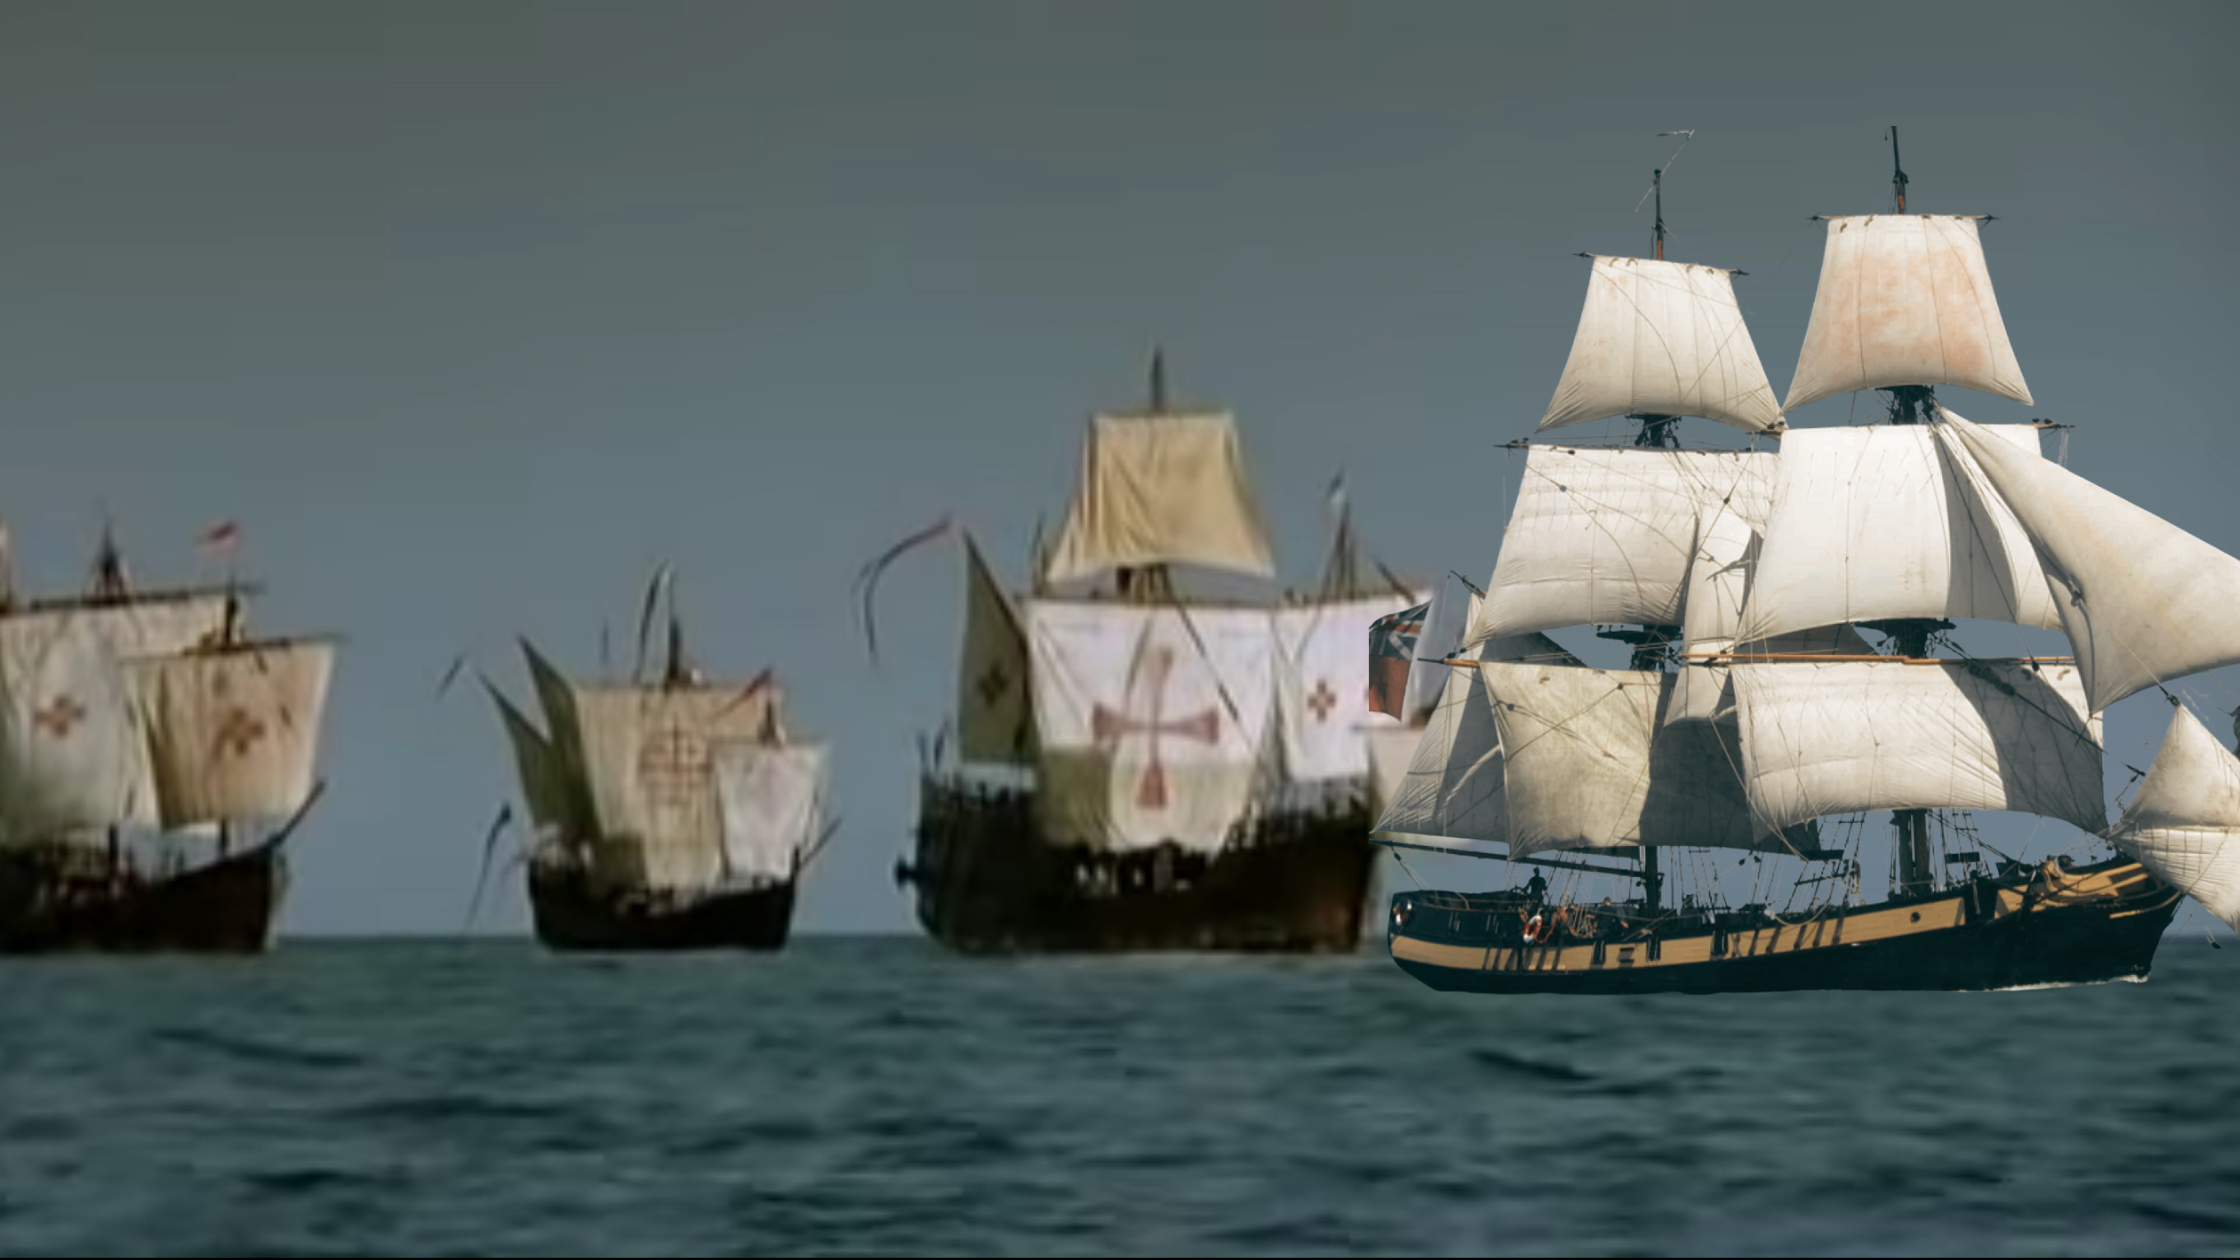 Le bateau utilisé dans le film 1492 comme la Santa Maria est à quai au salon nautique d’Arcachon. Ici, photo extrait du film avec le Phœnix devant